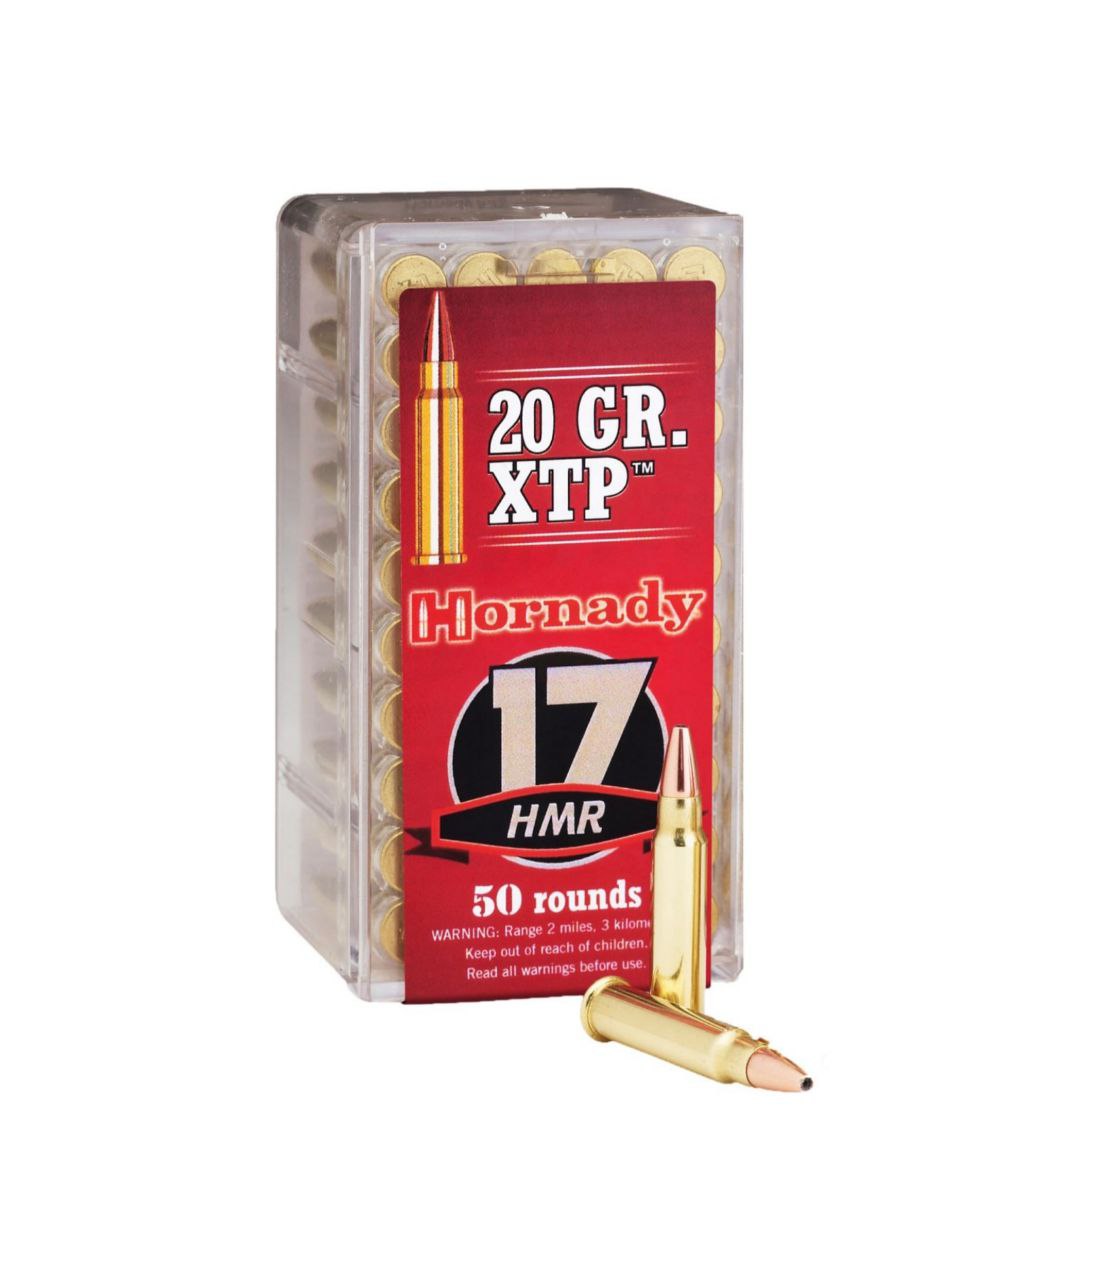 Патрон Hornady Varmint Express Rimfire кал.17 HMR куля HP XTP, 20 GR (1.3 г)